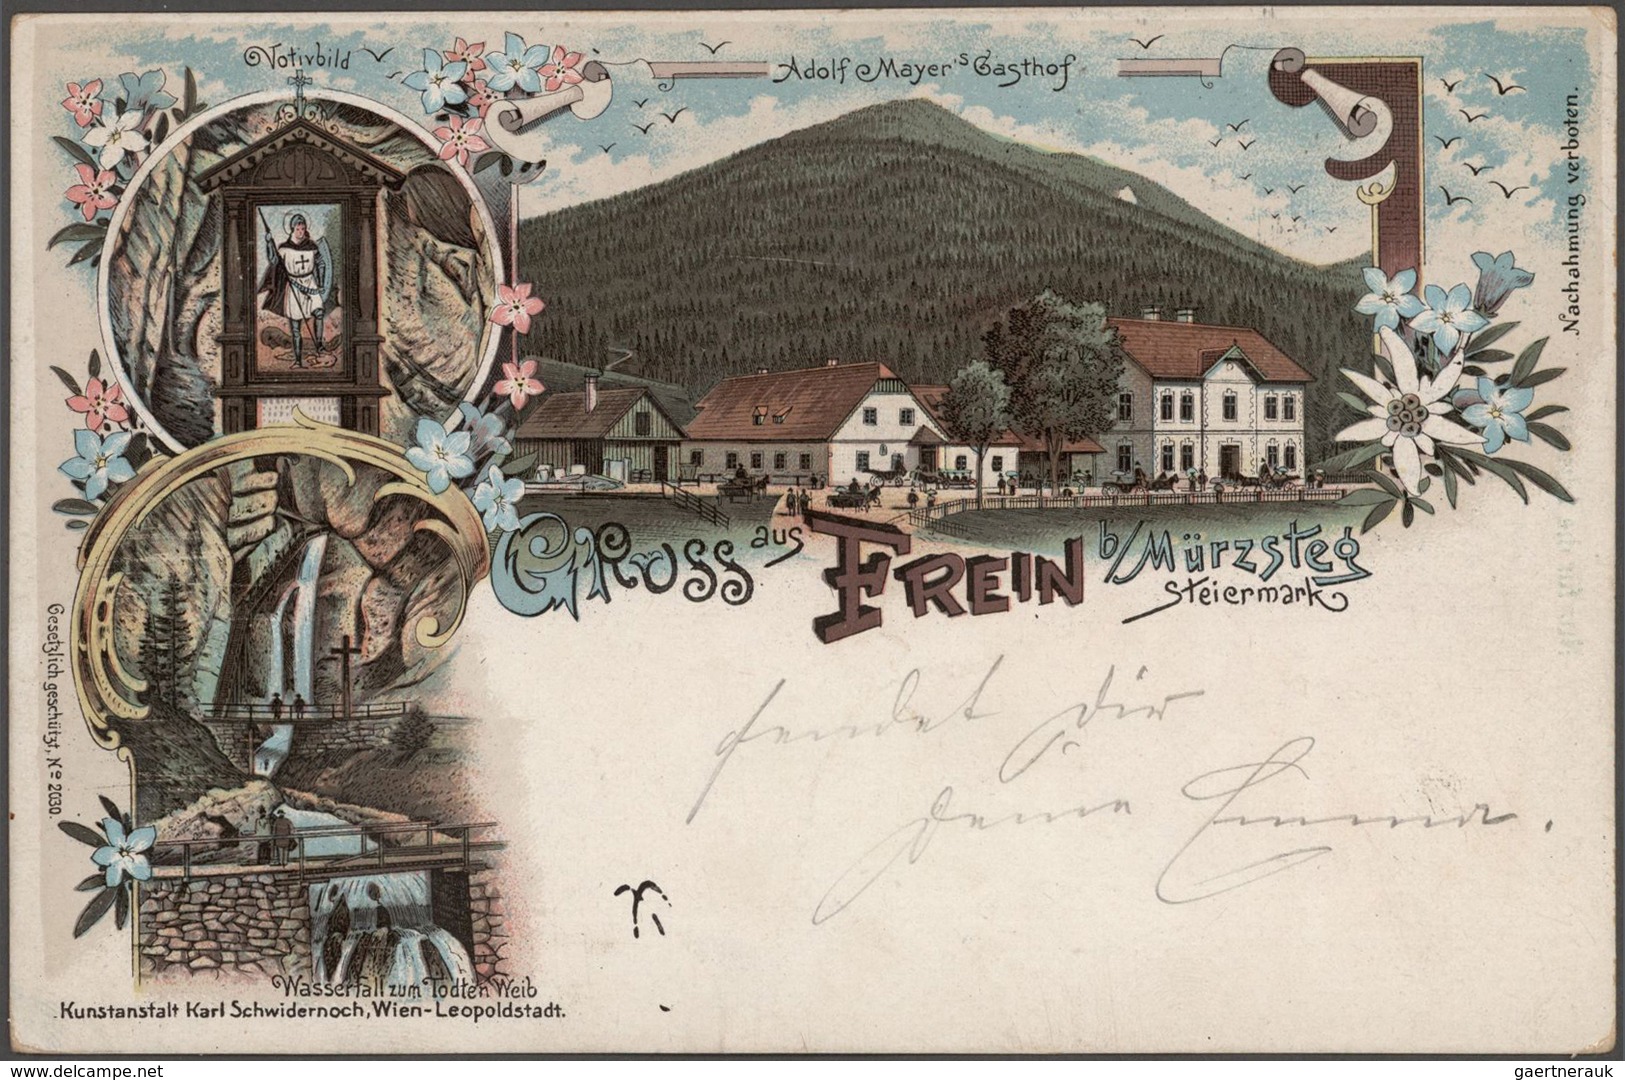 Ansichtskarten: Österreich: SCHACHTEL mit gut 500 historischen Ansichtskarten ab 1892 und nur wenige